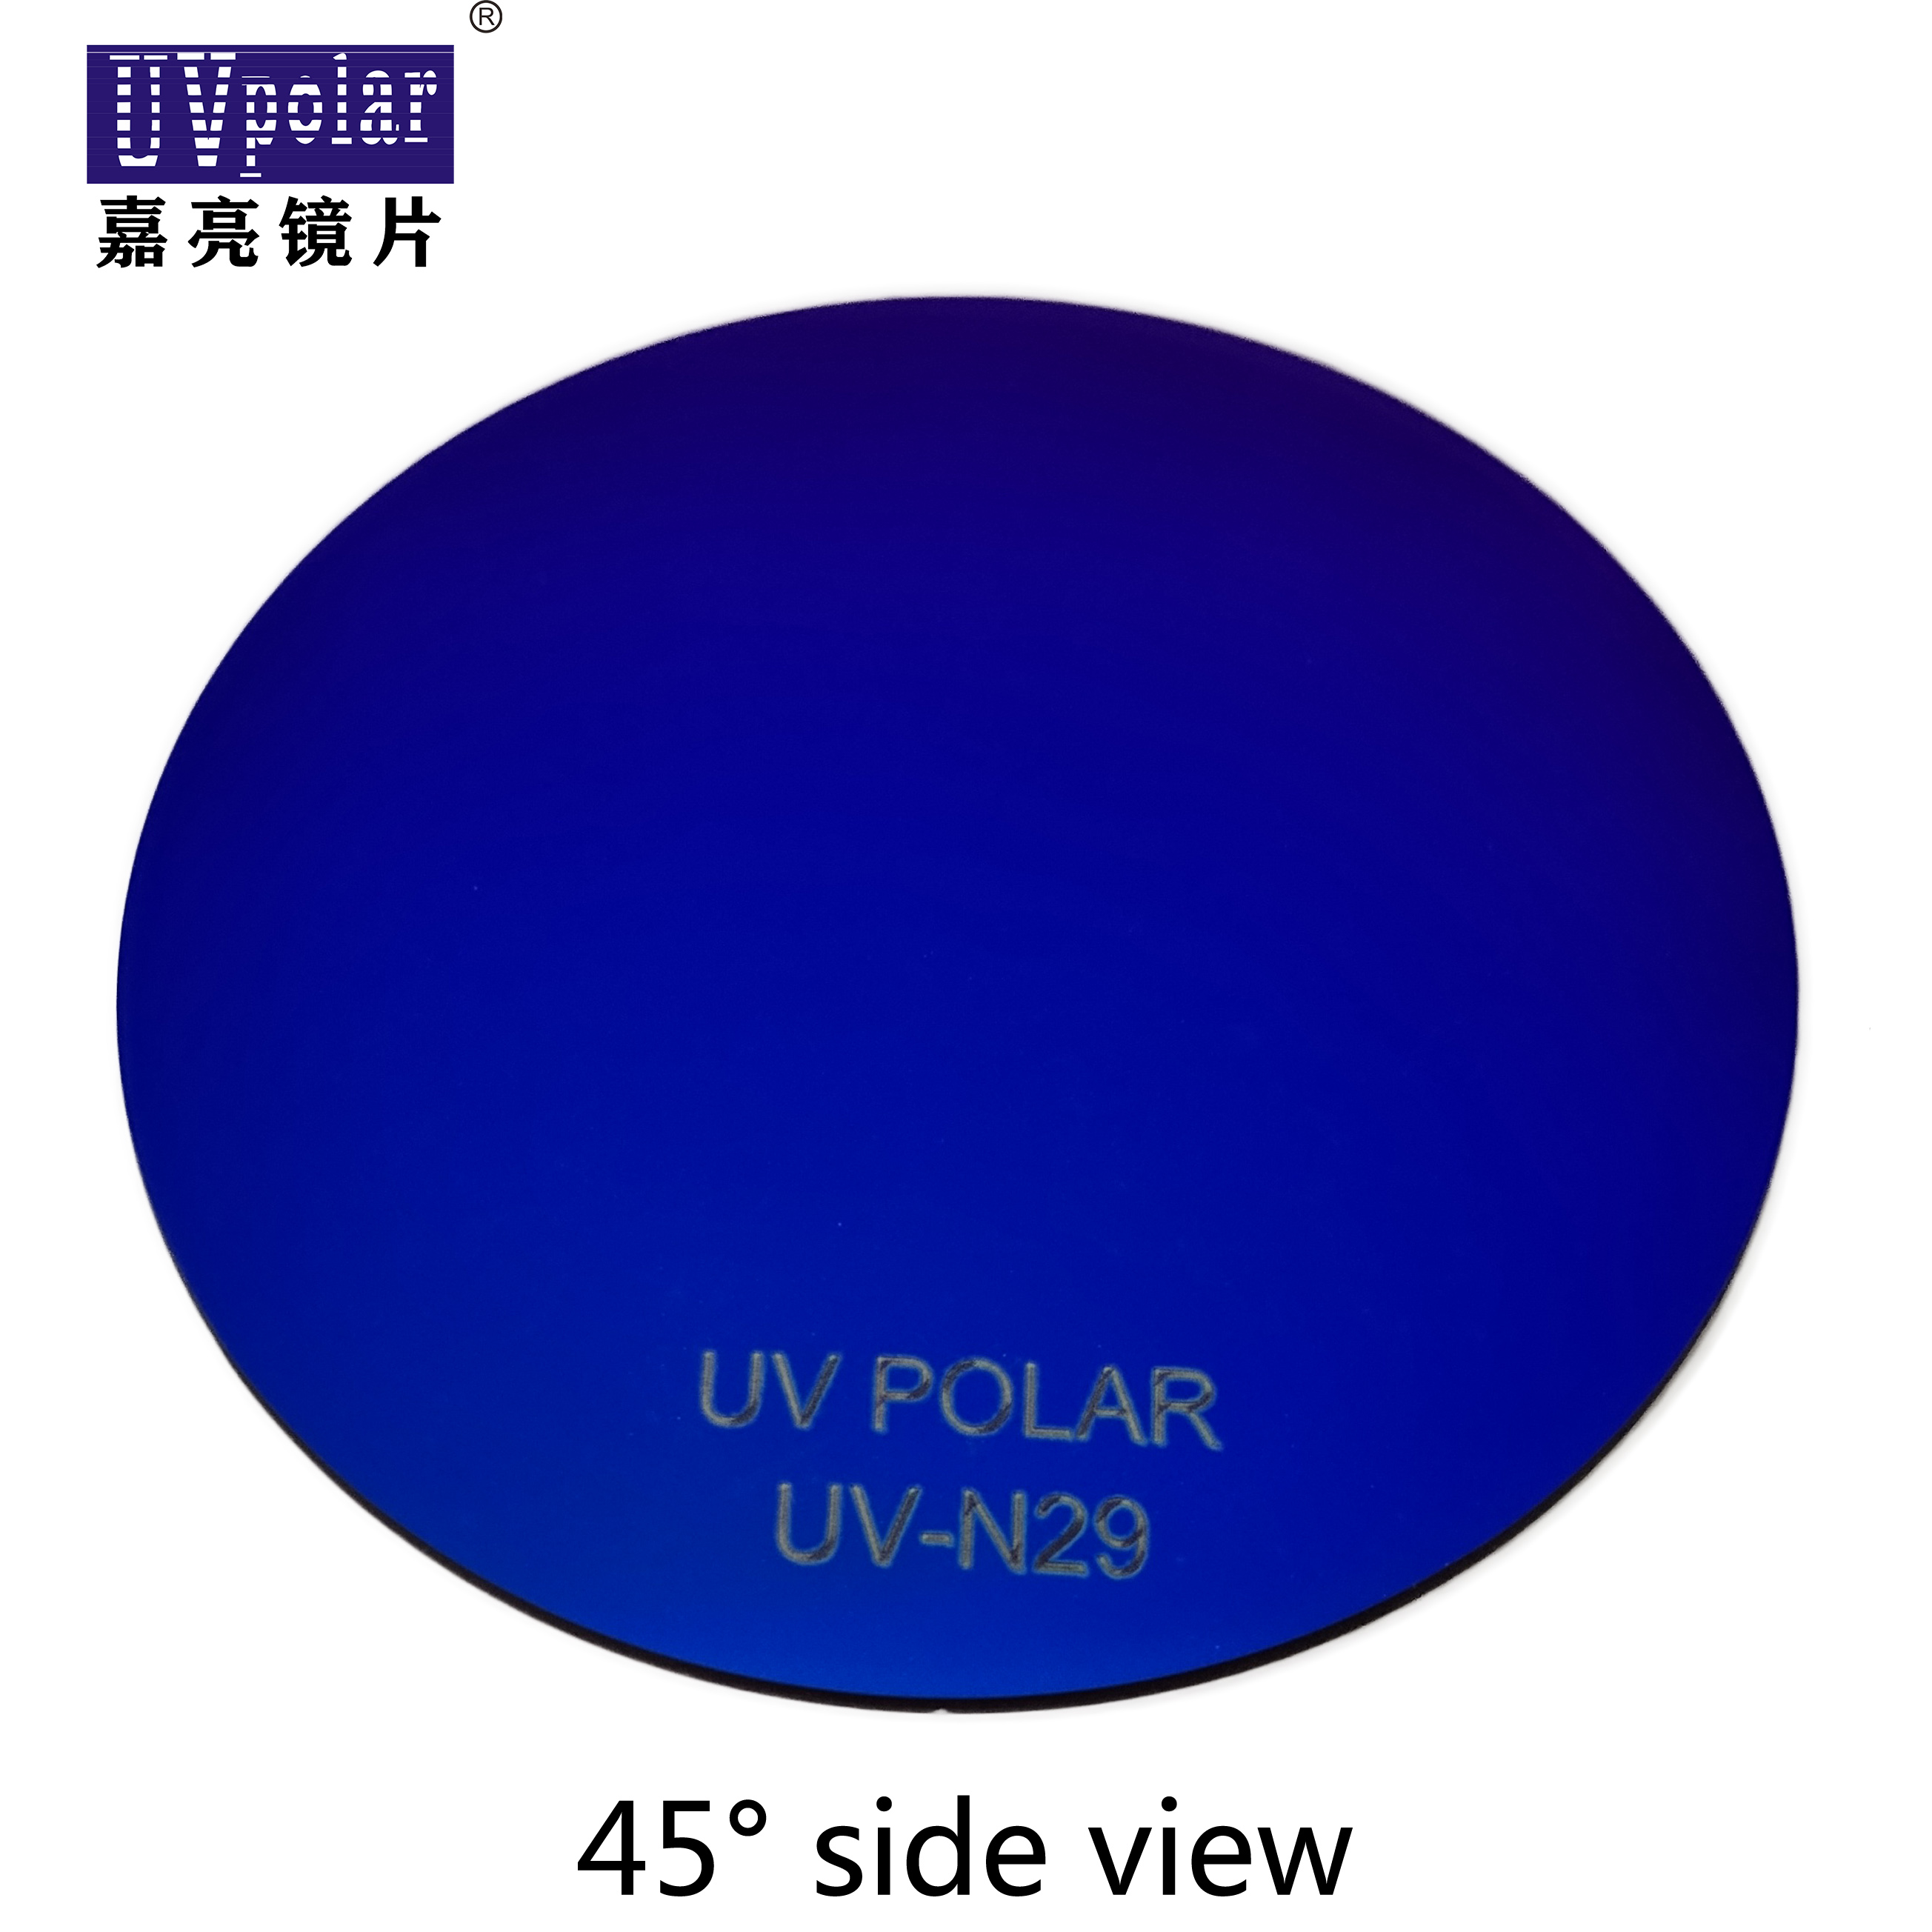 UV-N29